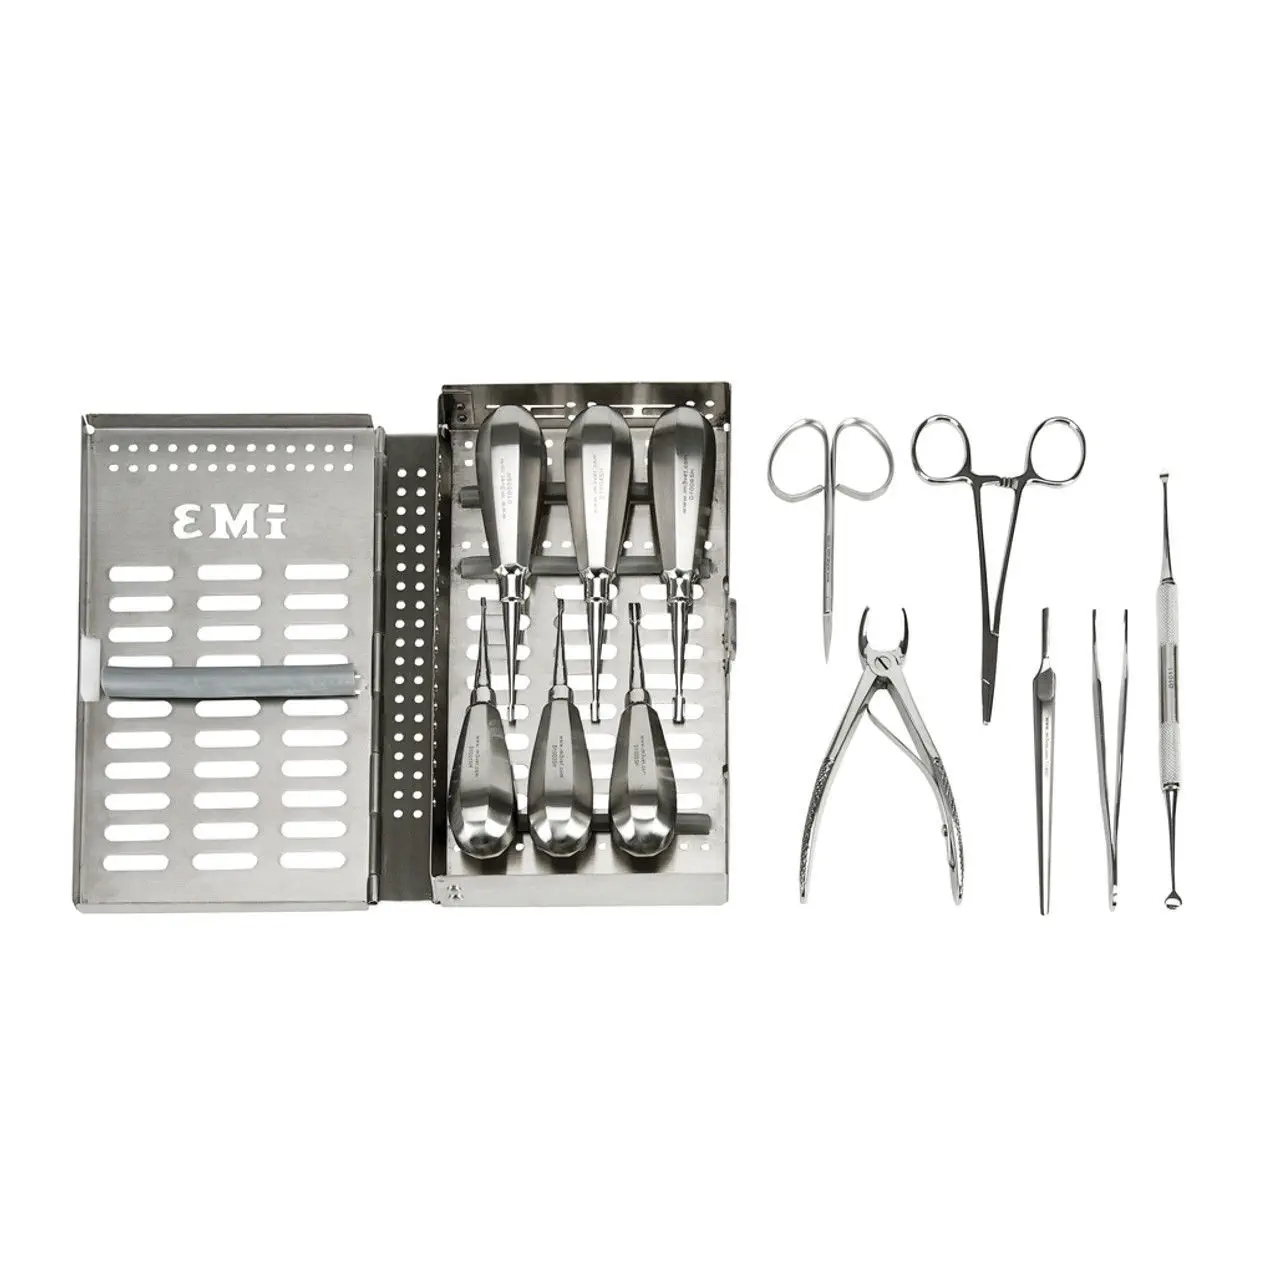 ชุดเครื่องมือถอนฟันสำหรับสัตว์ Dental extraction veterinary instrument kit D4000  iM3